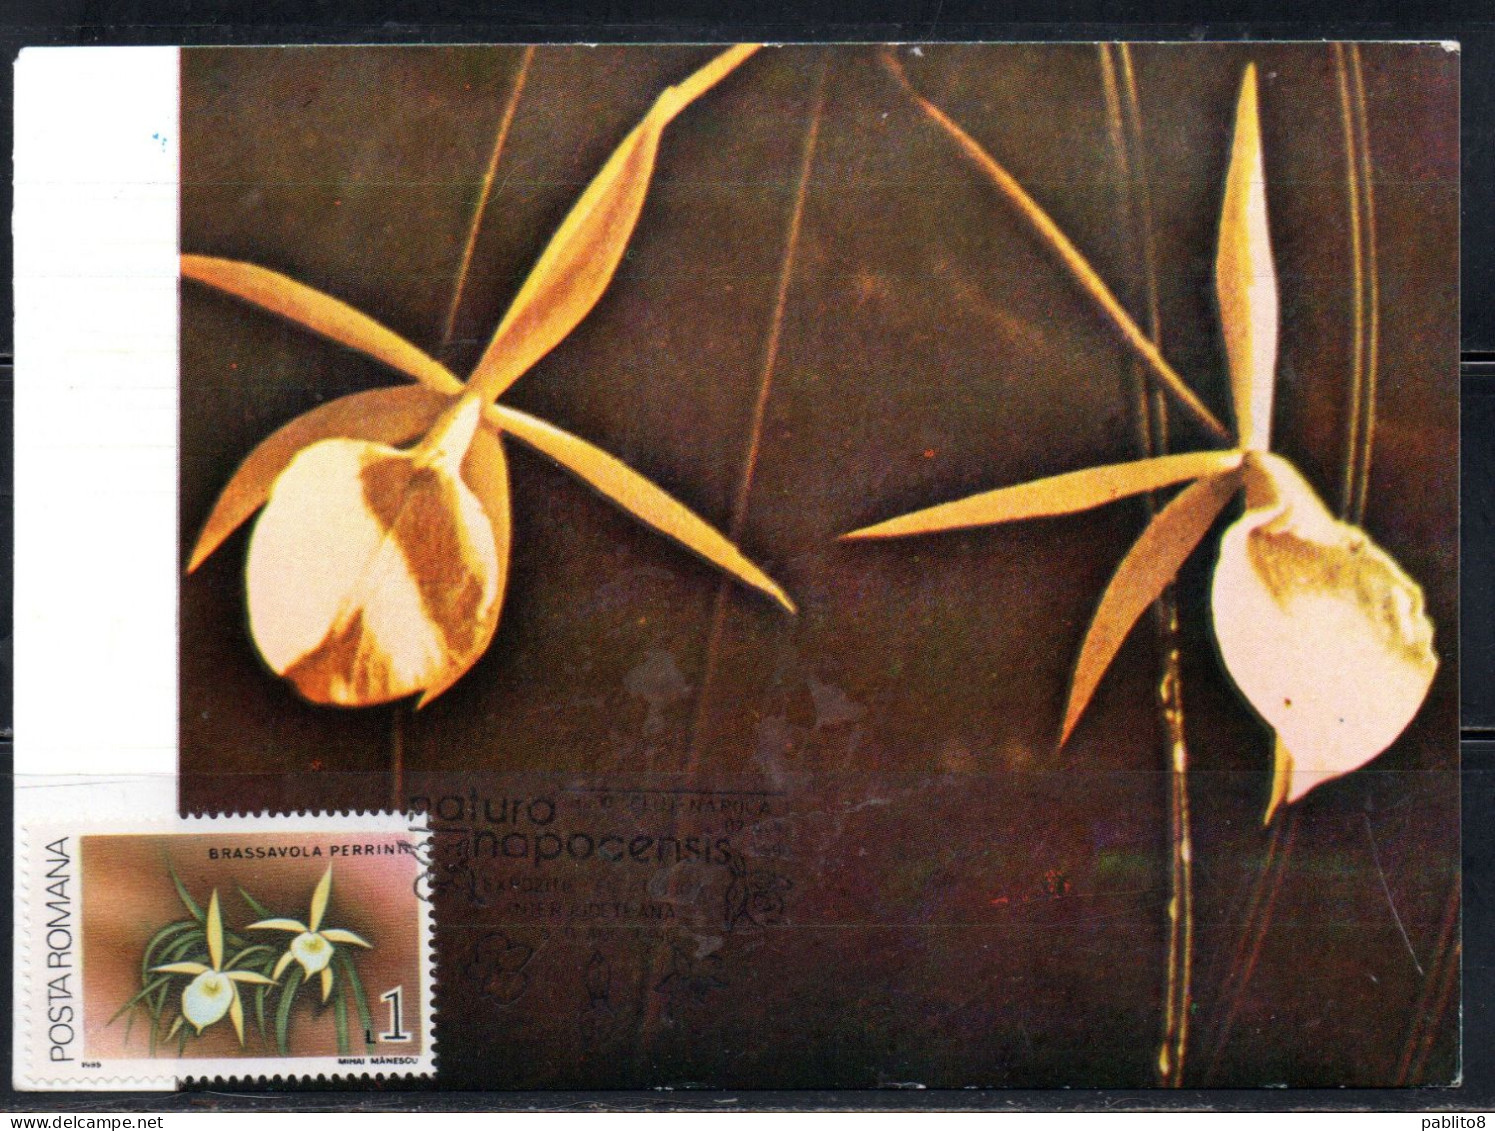 ROMANIA 1988 FLORA FLOWERS ORCHIDS BRASSAVOLA PERRINII FLOWER ORCHID 1L MAXI MAXIMUM CARD - Cartes-maximum (CM)